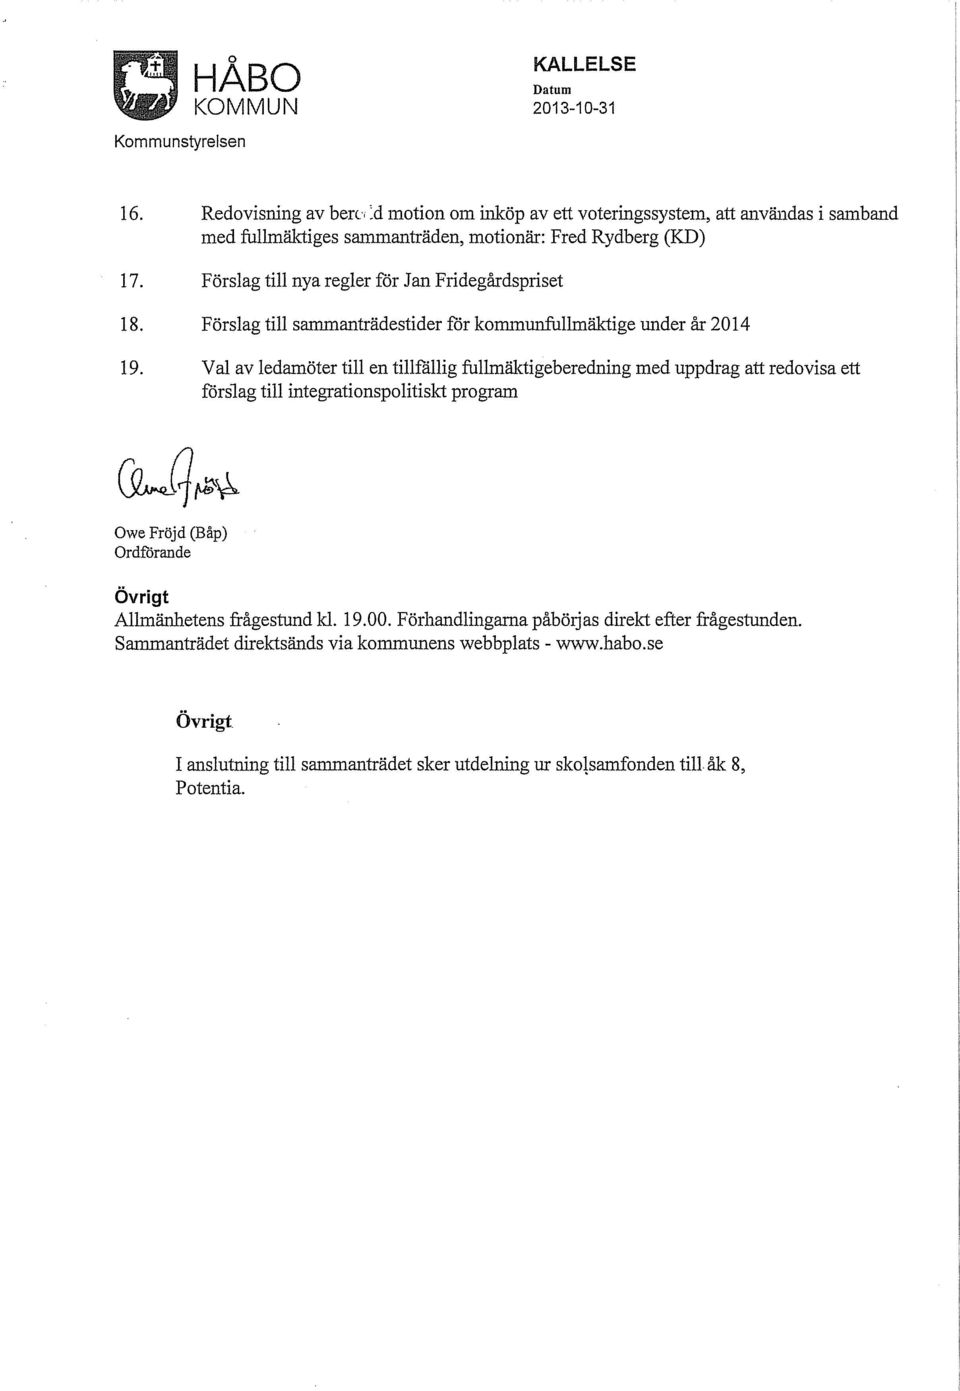 Förslag till nya regler för Jan Fridegårdspriset 18. Förslag till sanlltianträdestider för kommunfullmäktige under år 2014 19.